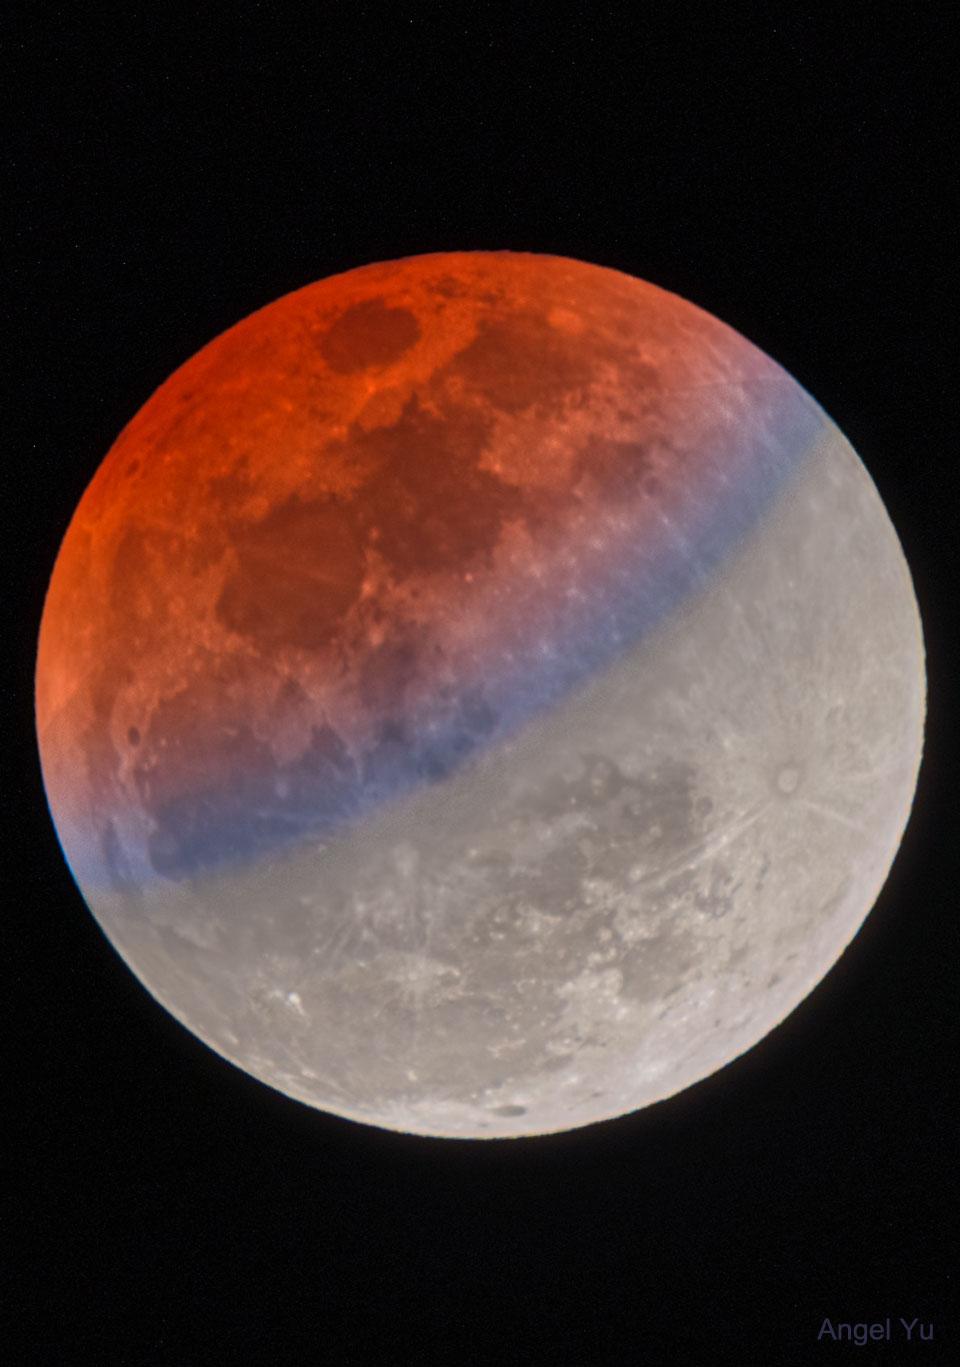 قمر مخسوف جزئياً بصورة مدى ديناميكي عالي يظهر فيها الجزء المخسوف باللون الأحمر يحيط به شريط أزرق بينما يظهر باقي القمر باللون الرمادي الطبيعي المعتاد.